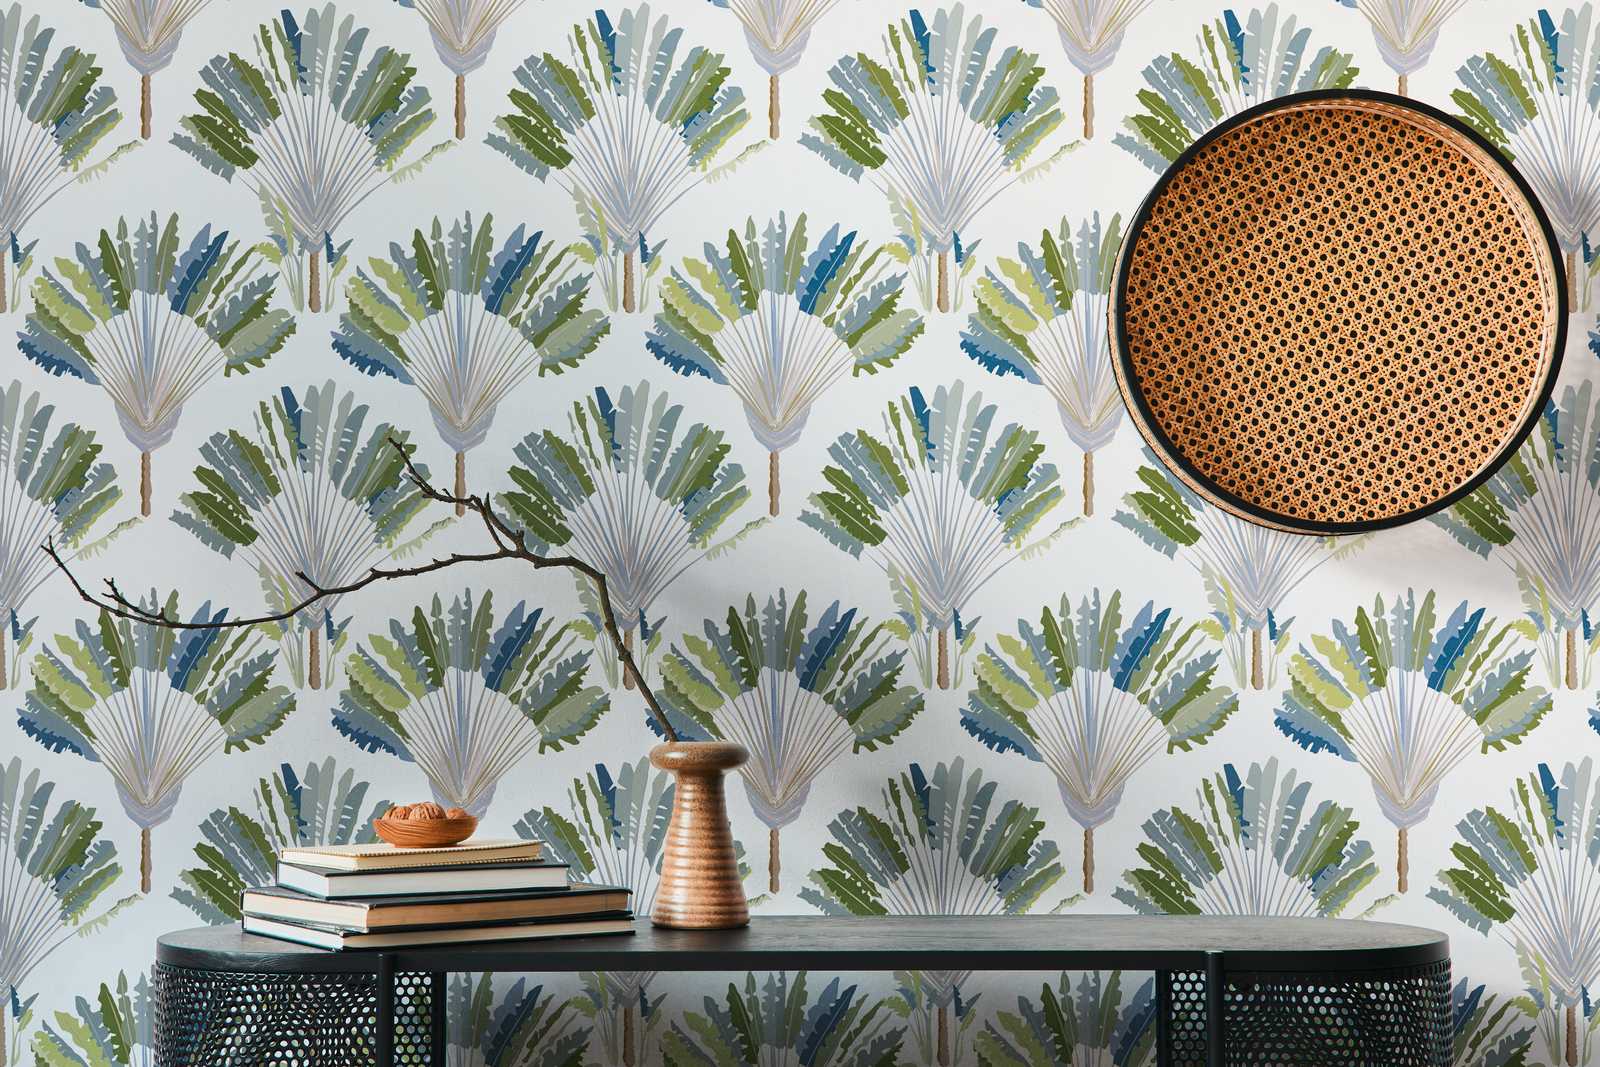             Papel pintado Hojas de palmera y plantas perennes en patrón abstracto - Verde, blanco, azul
        